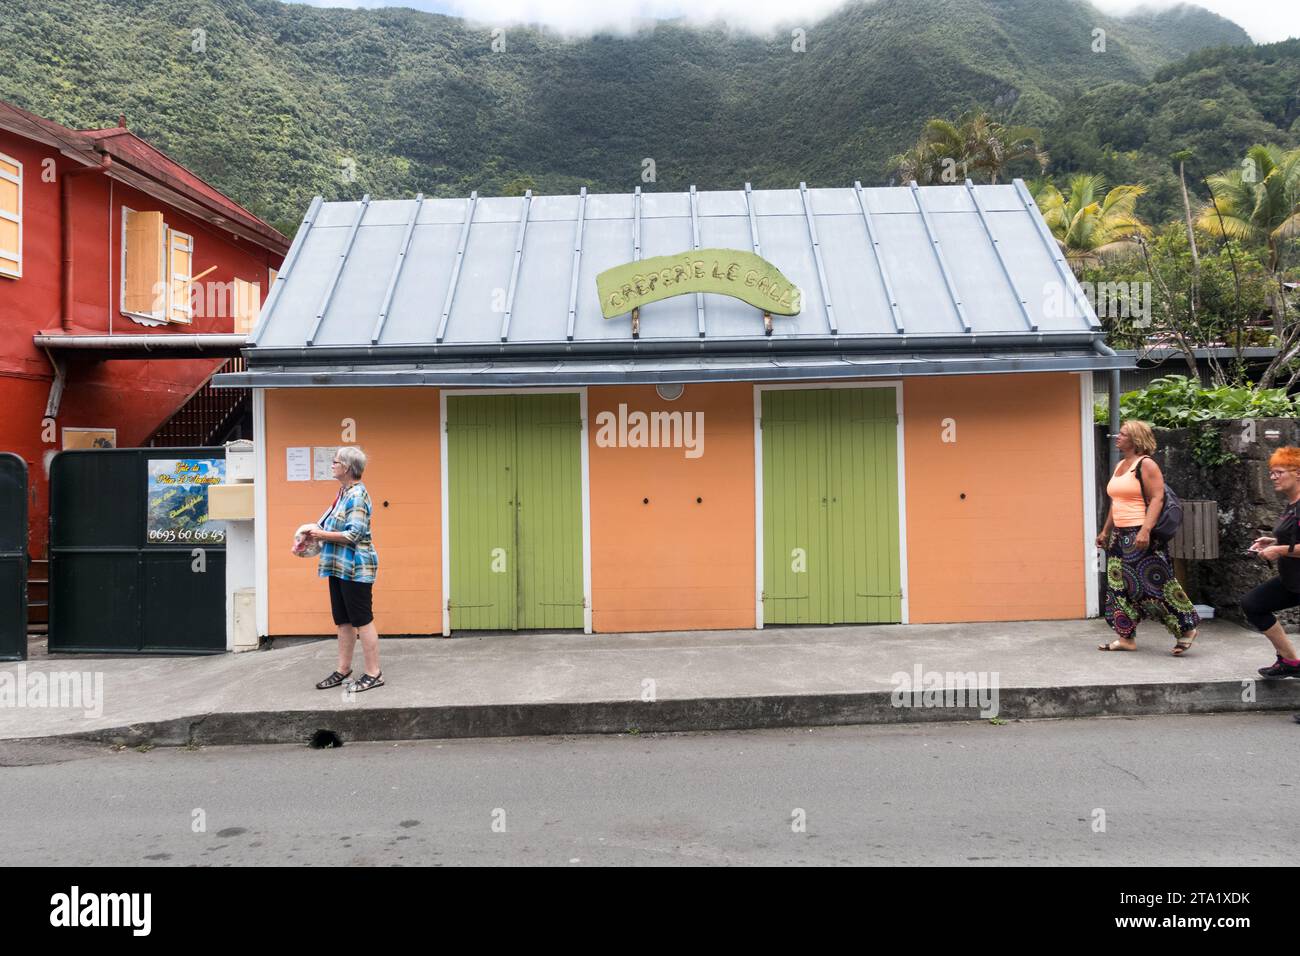 Creperie le Gall nel villaggio di Hell-Bourg, Reunion Island, Francia. Porte verdi con facciata arancione. Foto Stock